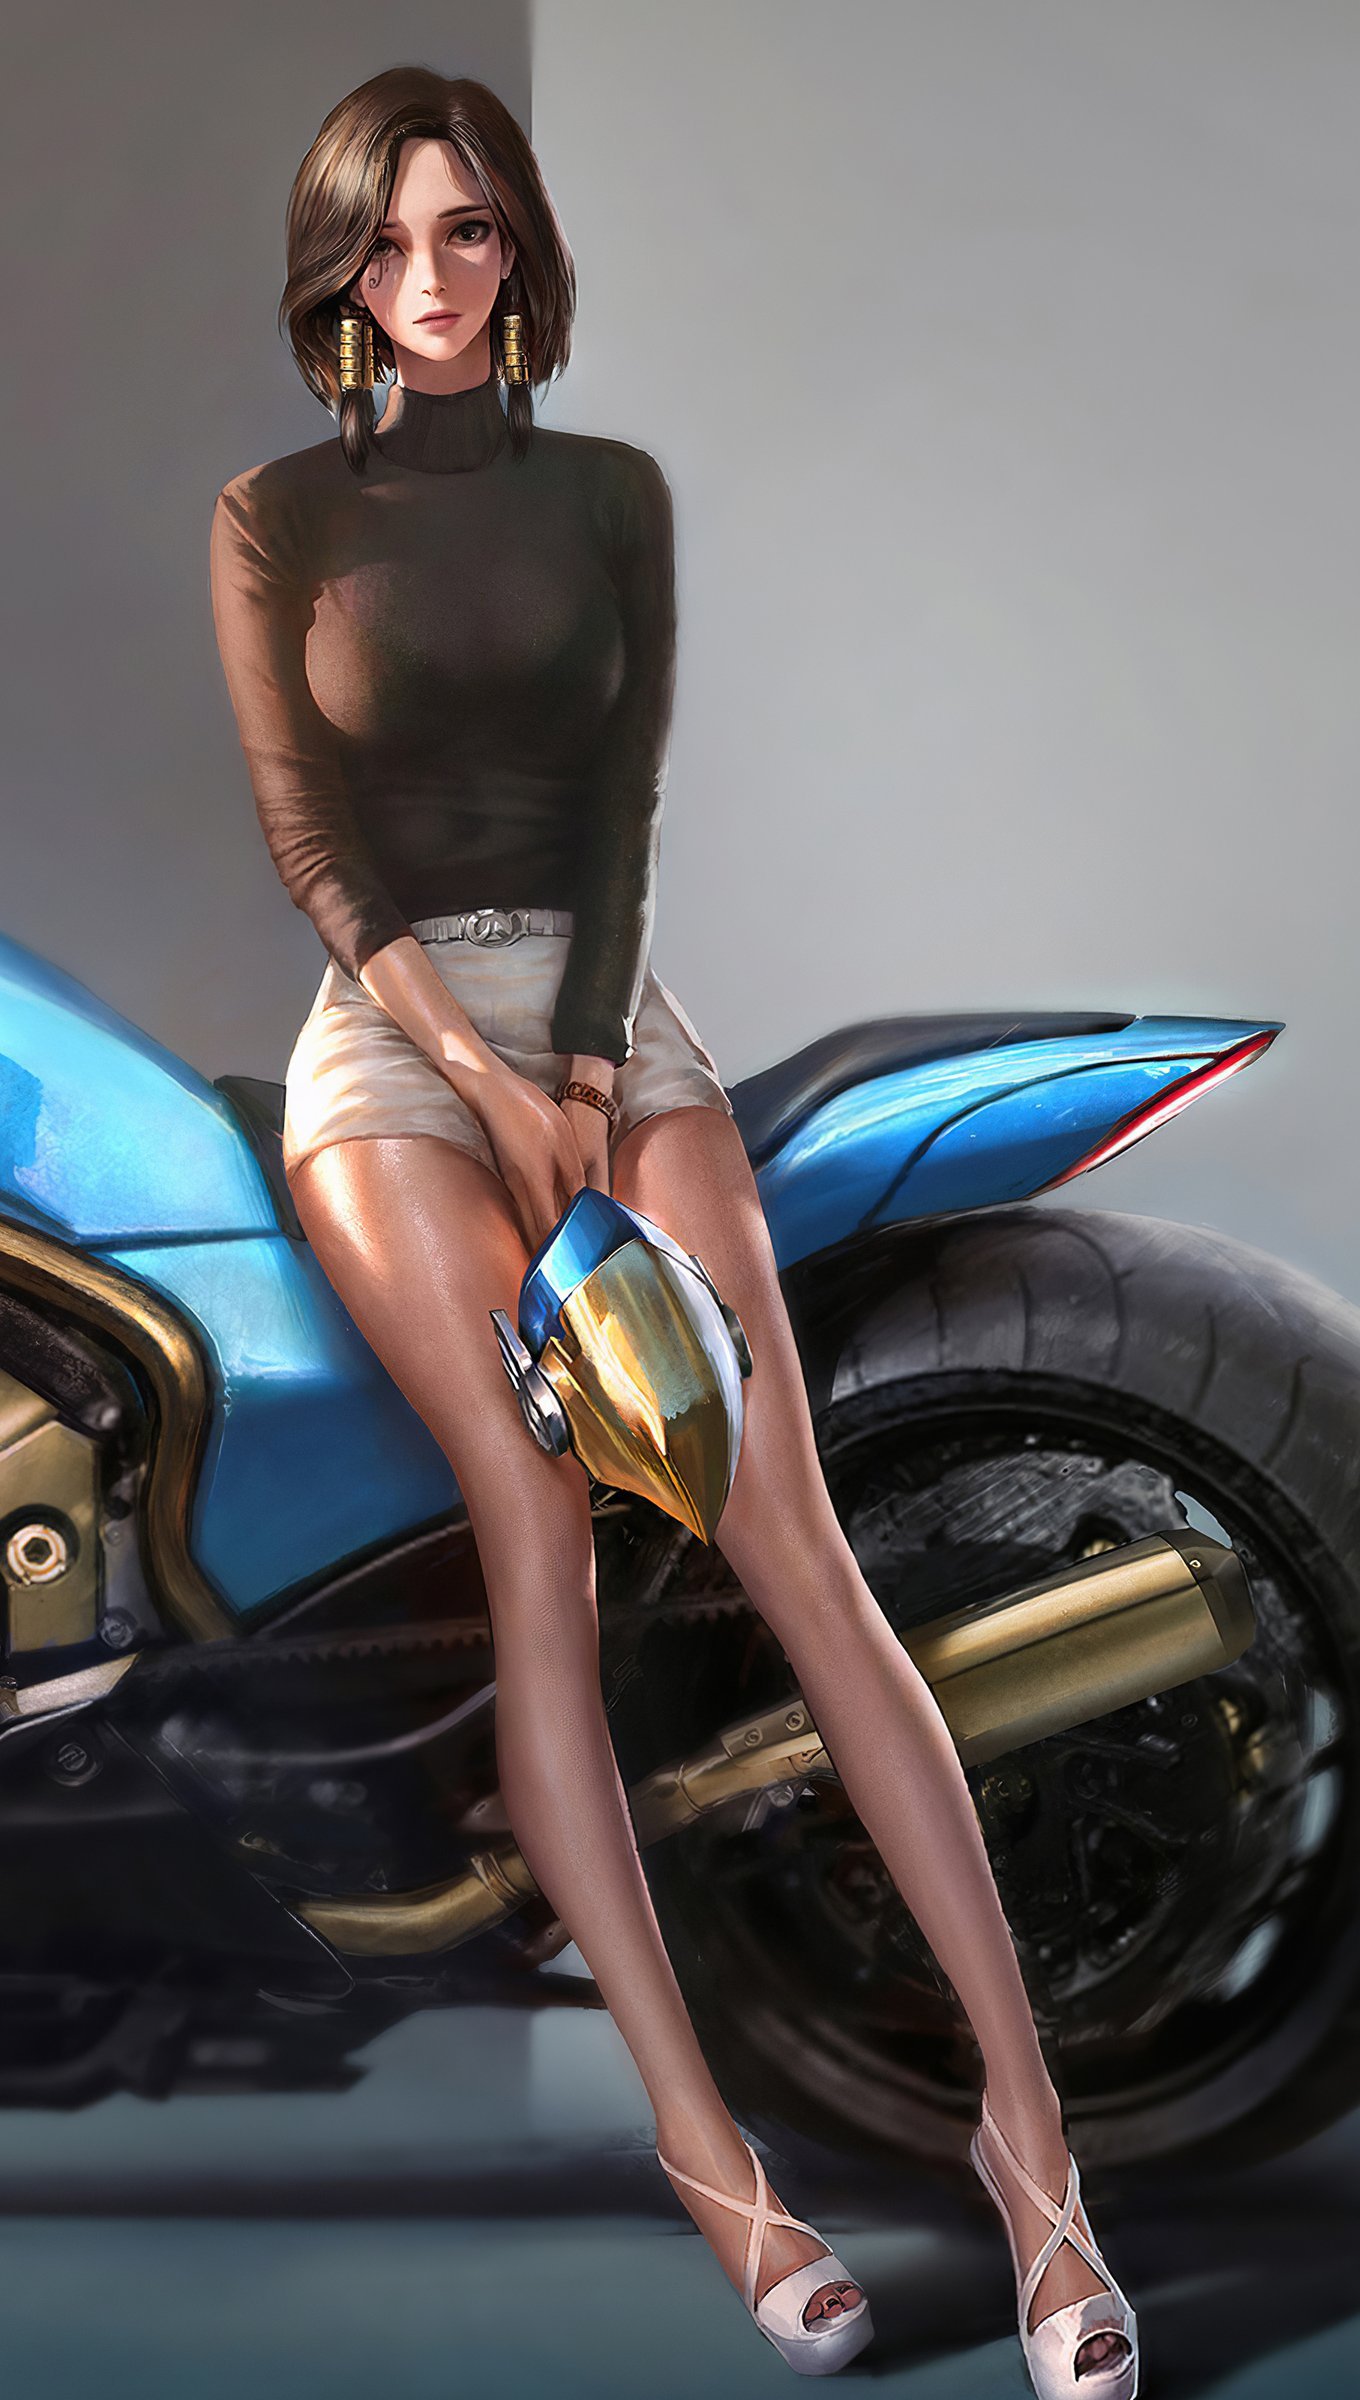 Fondos de pantalla Ilustración de chica en motocicleta Vertical